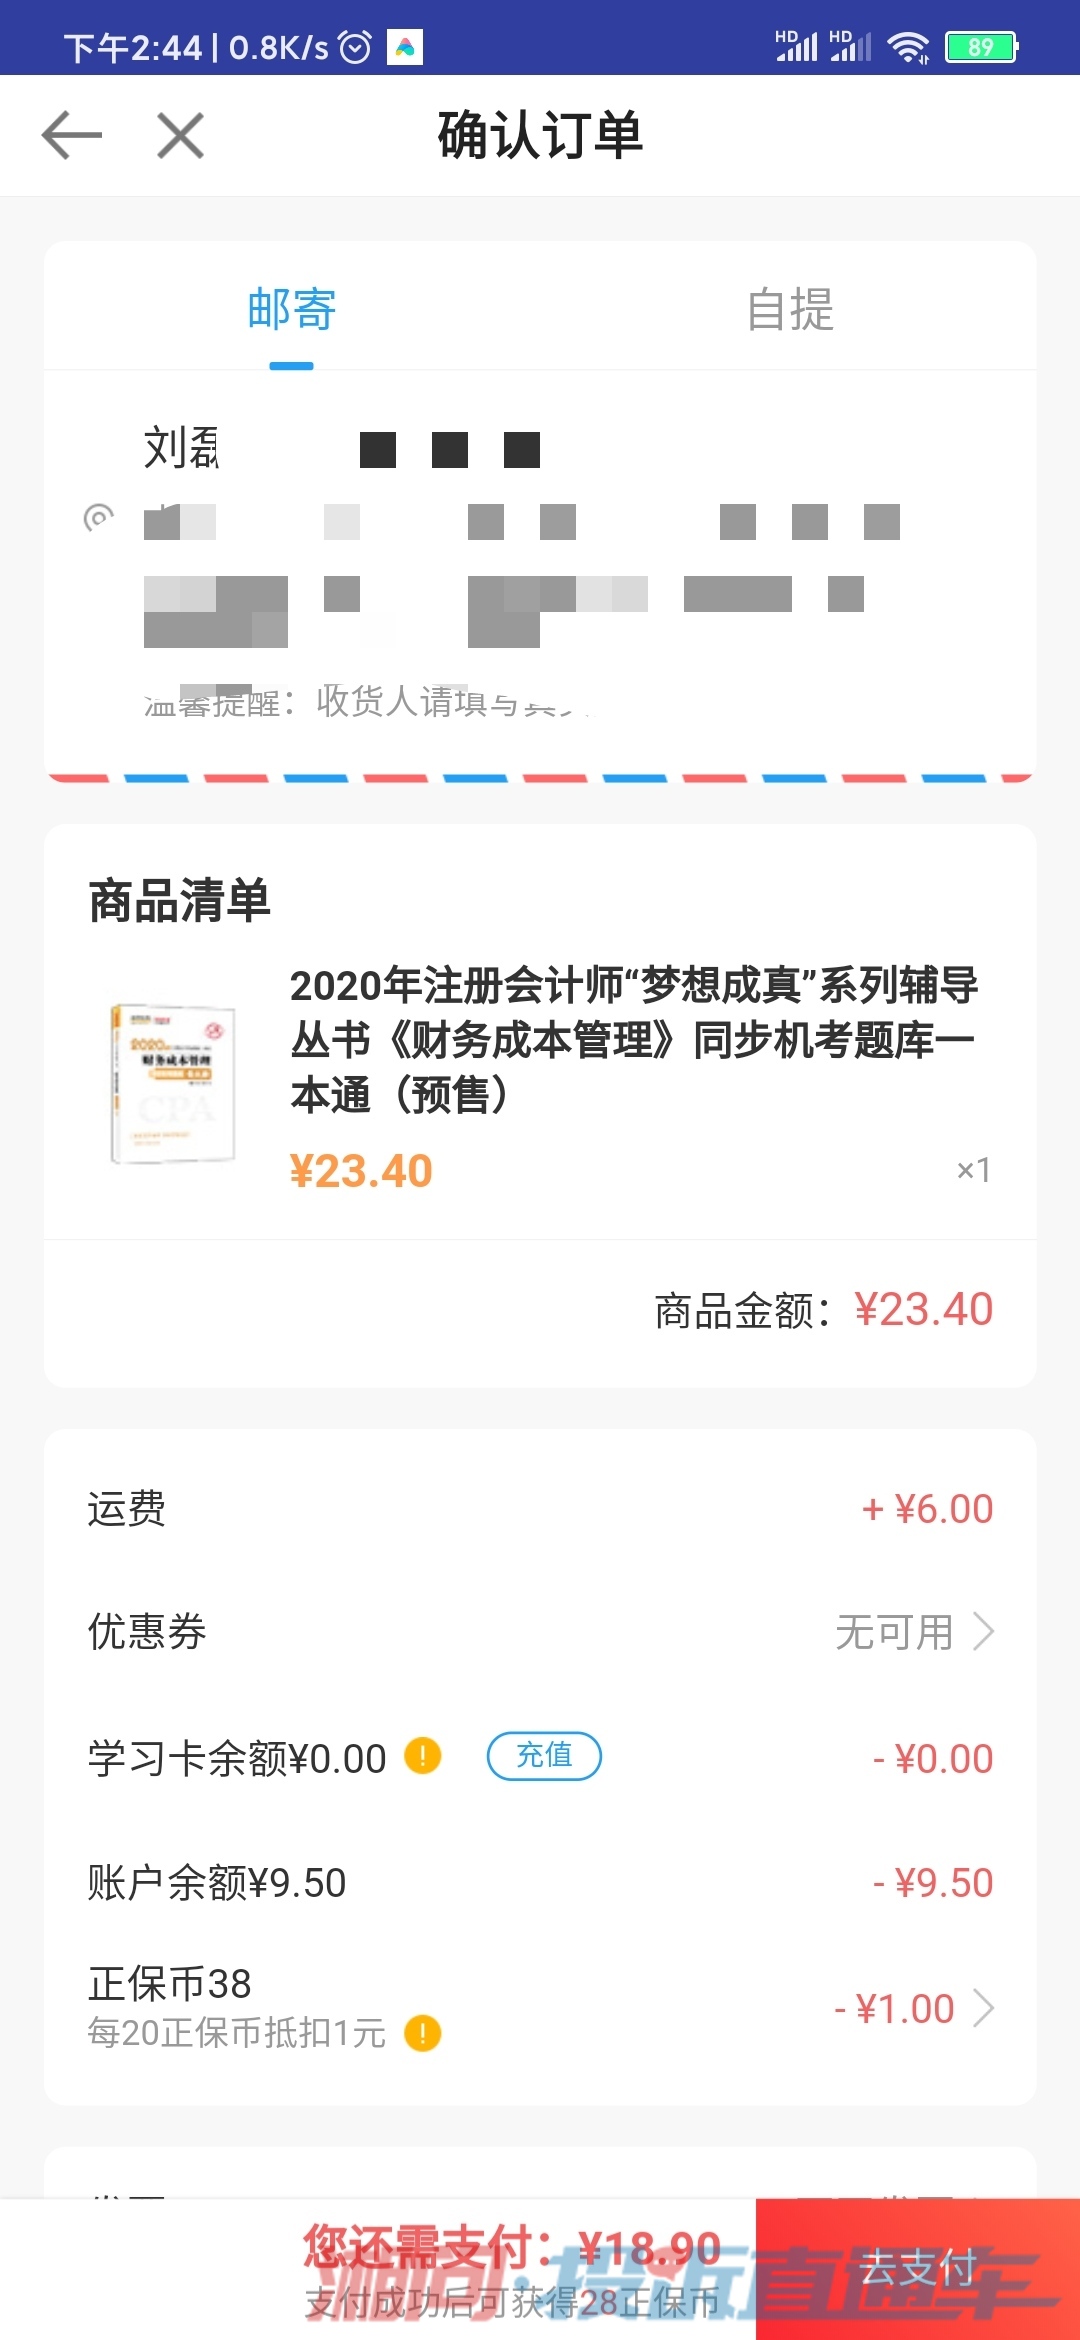 中华会计网校最近购买课程和图书要求二次付款